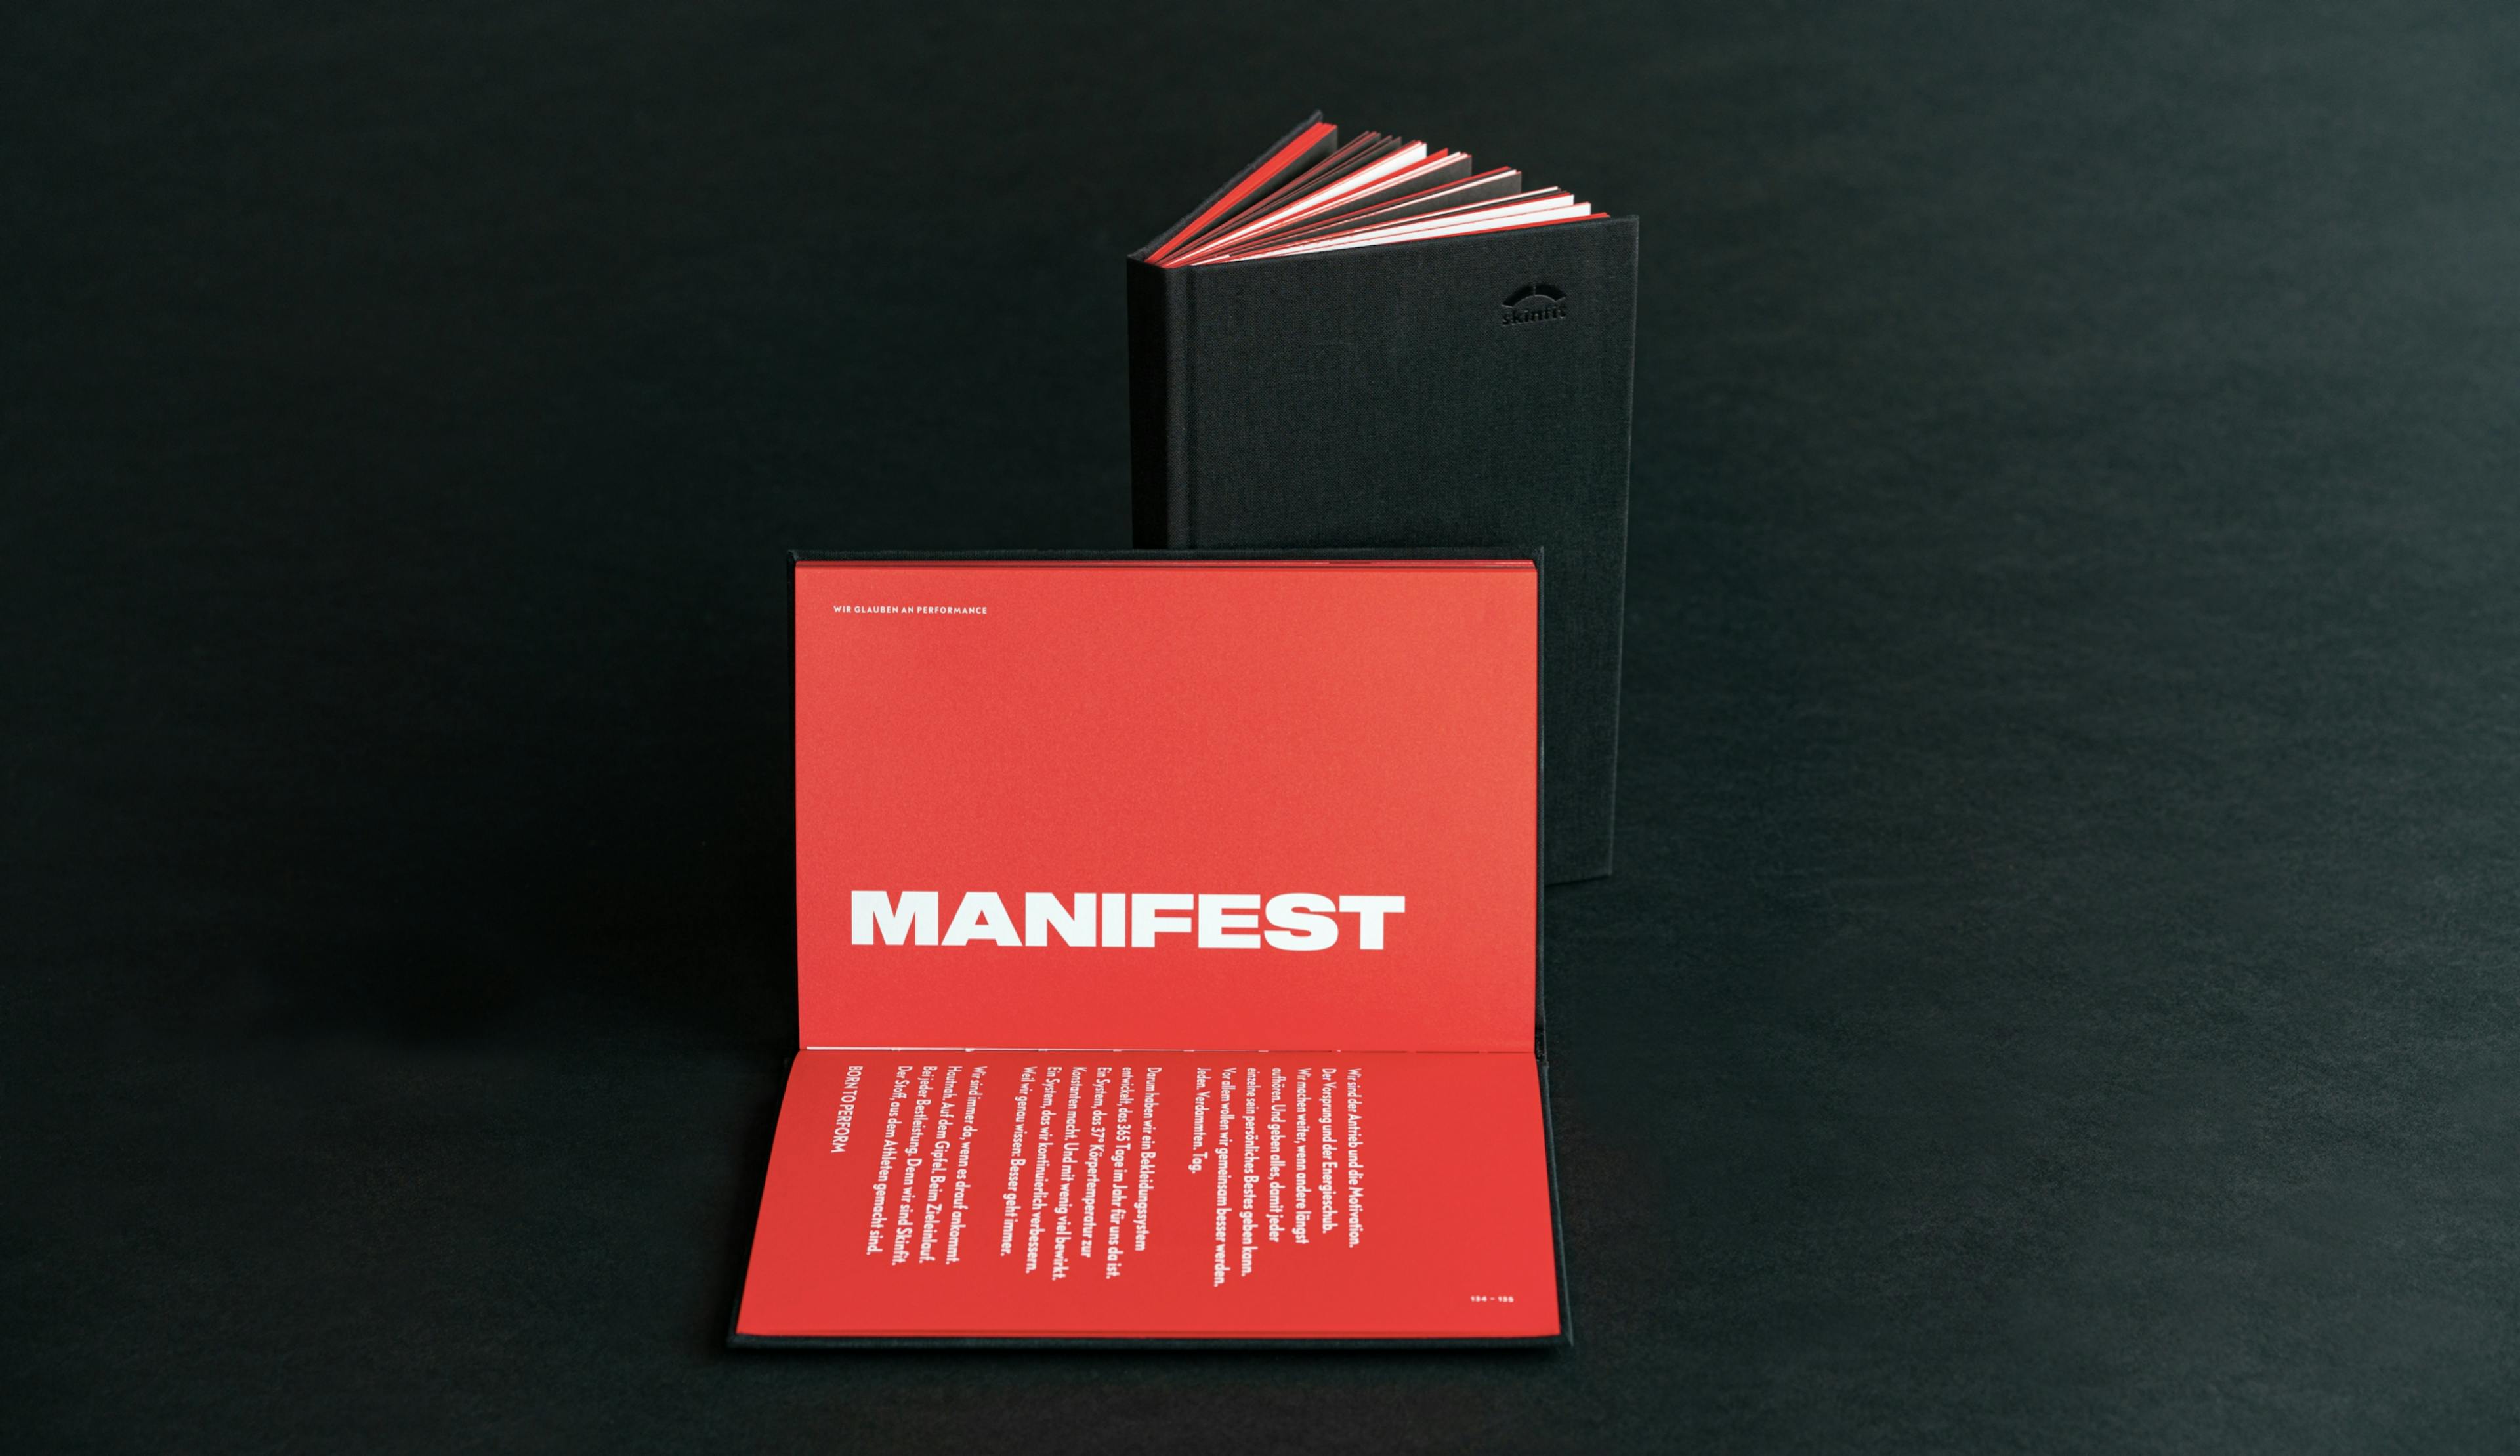 Foto skinfit brandbook auf schwarzem Hintergrund mit einer offenen Seite des Manifests © gm gobiq